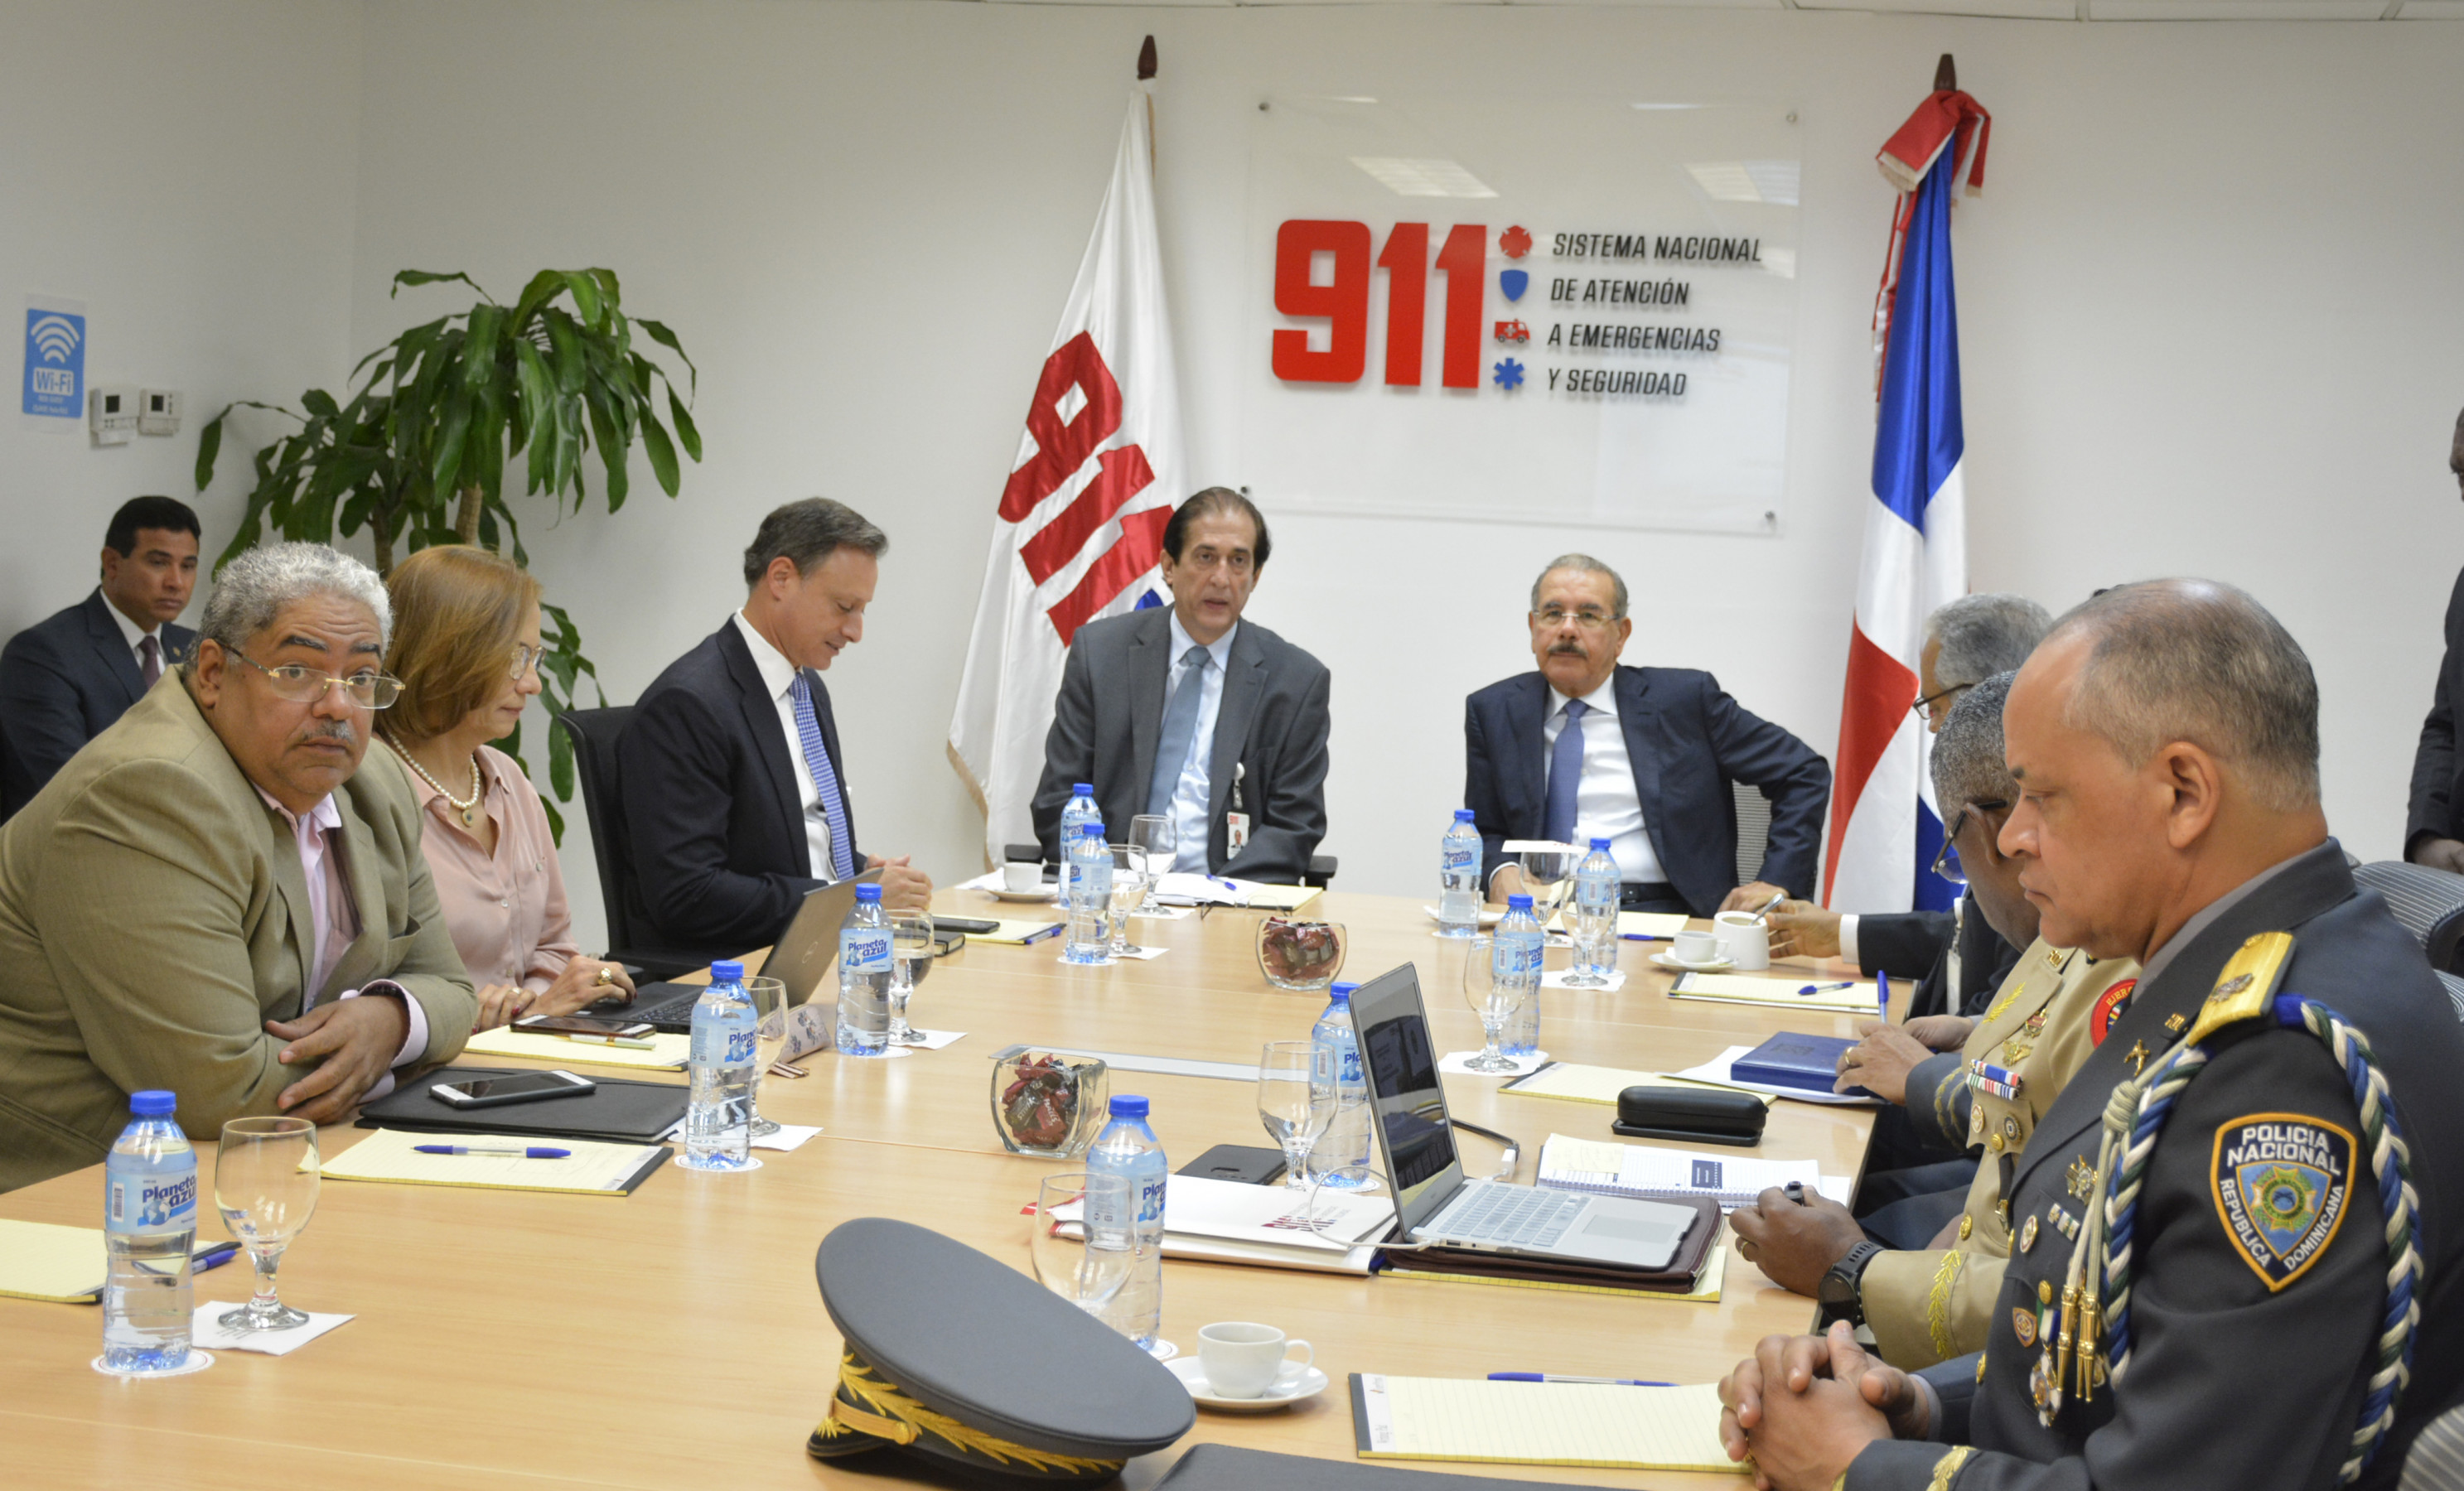 REPÚBLICA DOMINICANA: Presidente Danilo Medina conoce avances y desafíos Sistema Nacional de Atención a Emergencias y Seguridad 911